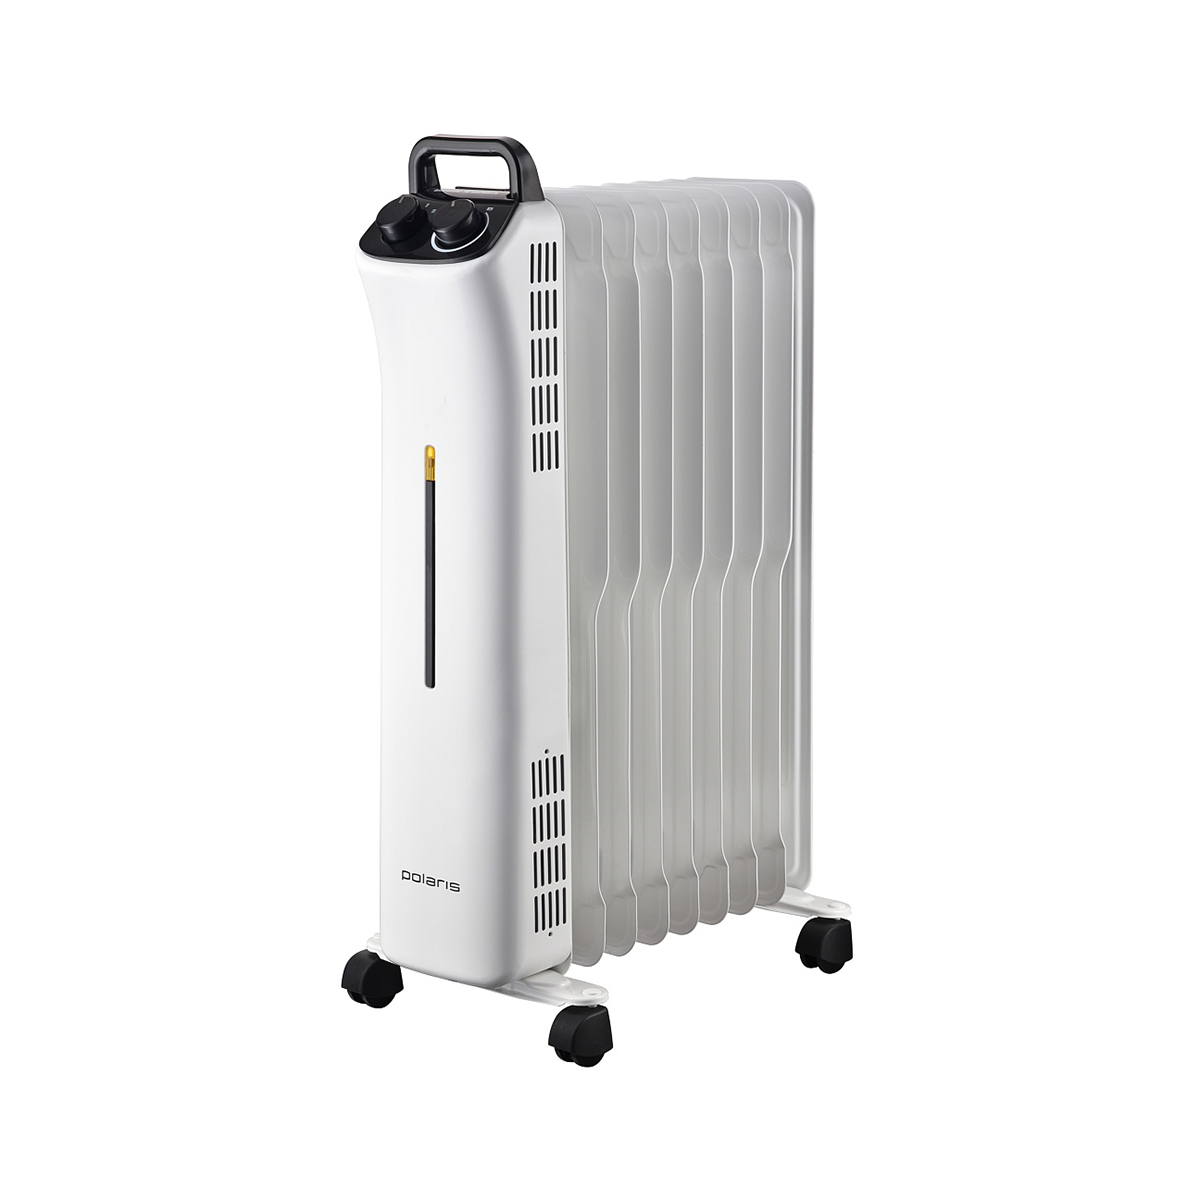 Масляный радиатор Polaris POR 0420 белый устройство для проверки давления кислород jet св000003356